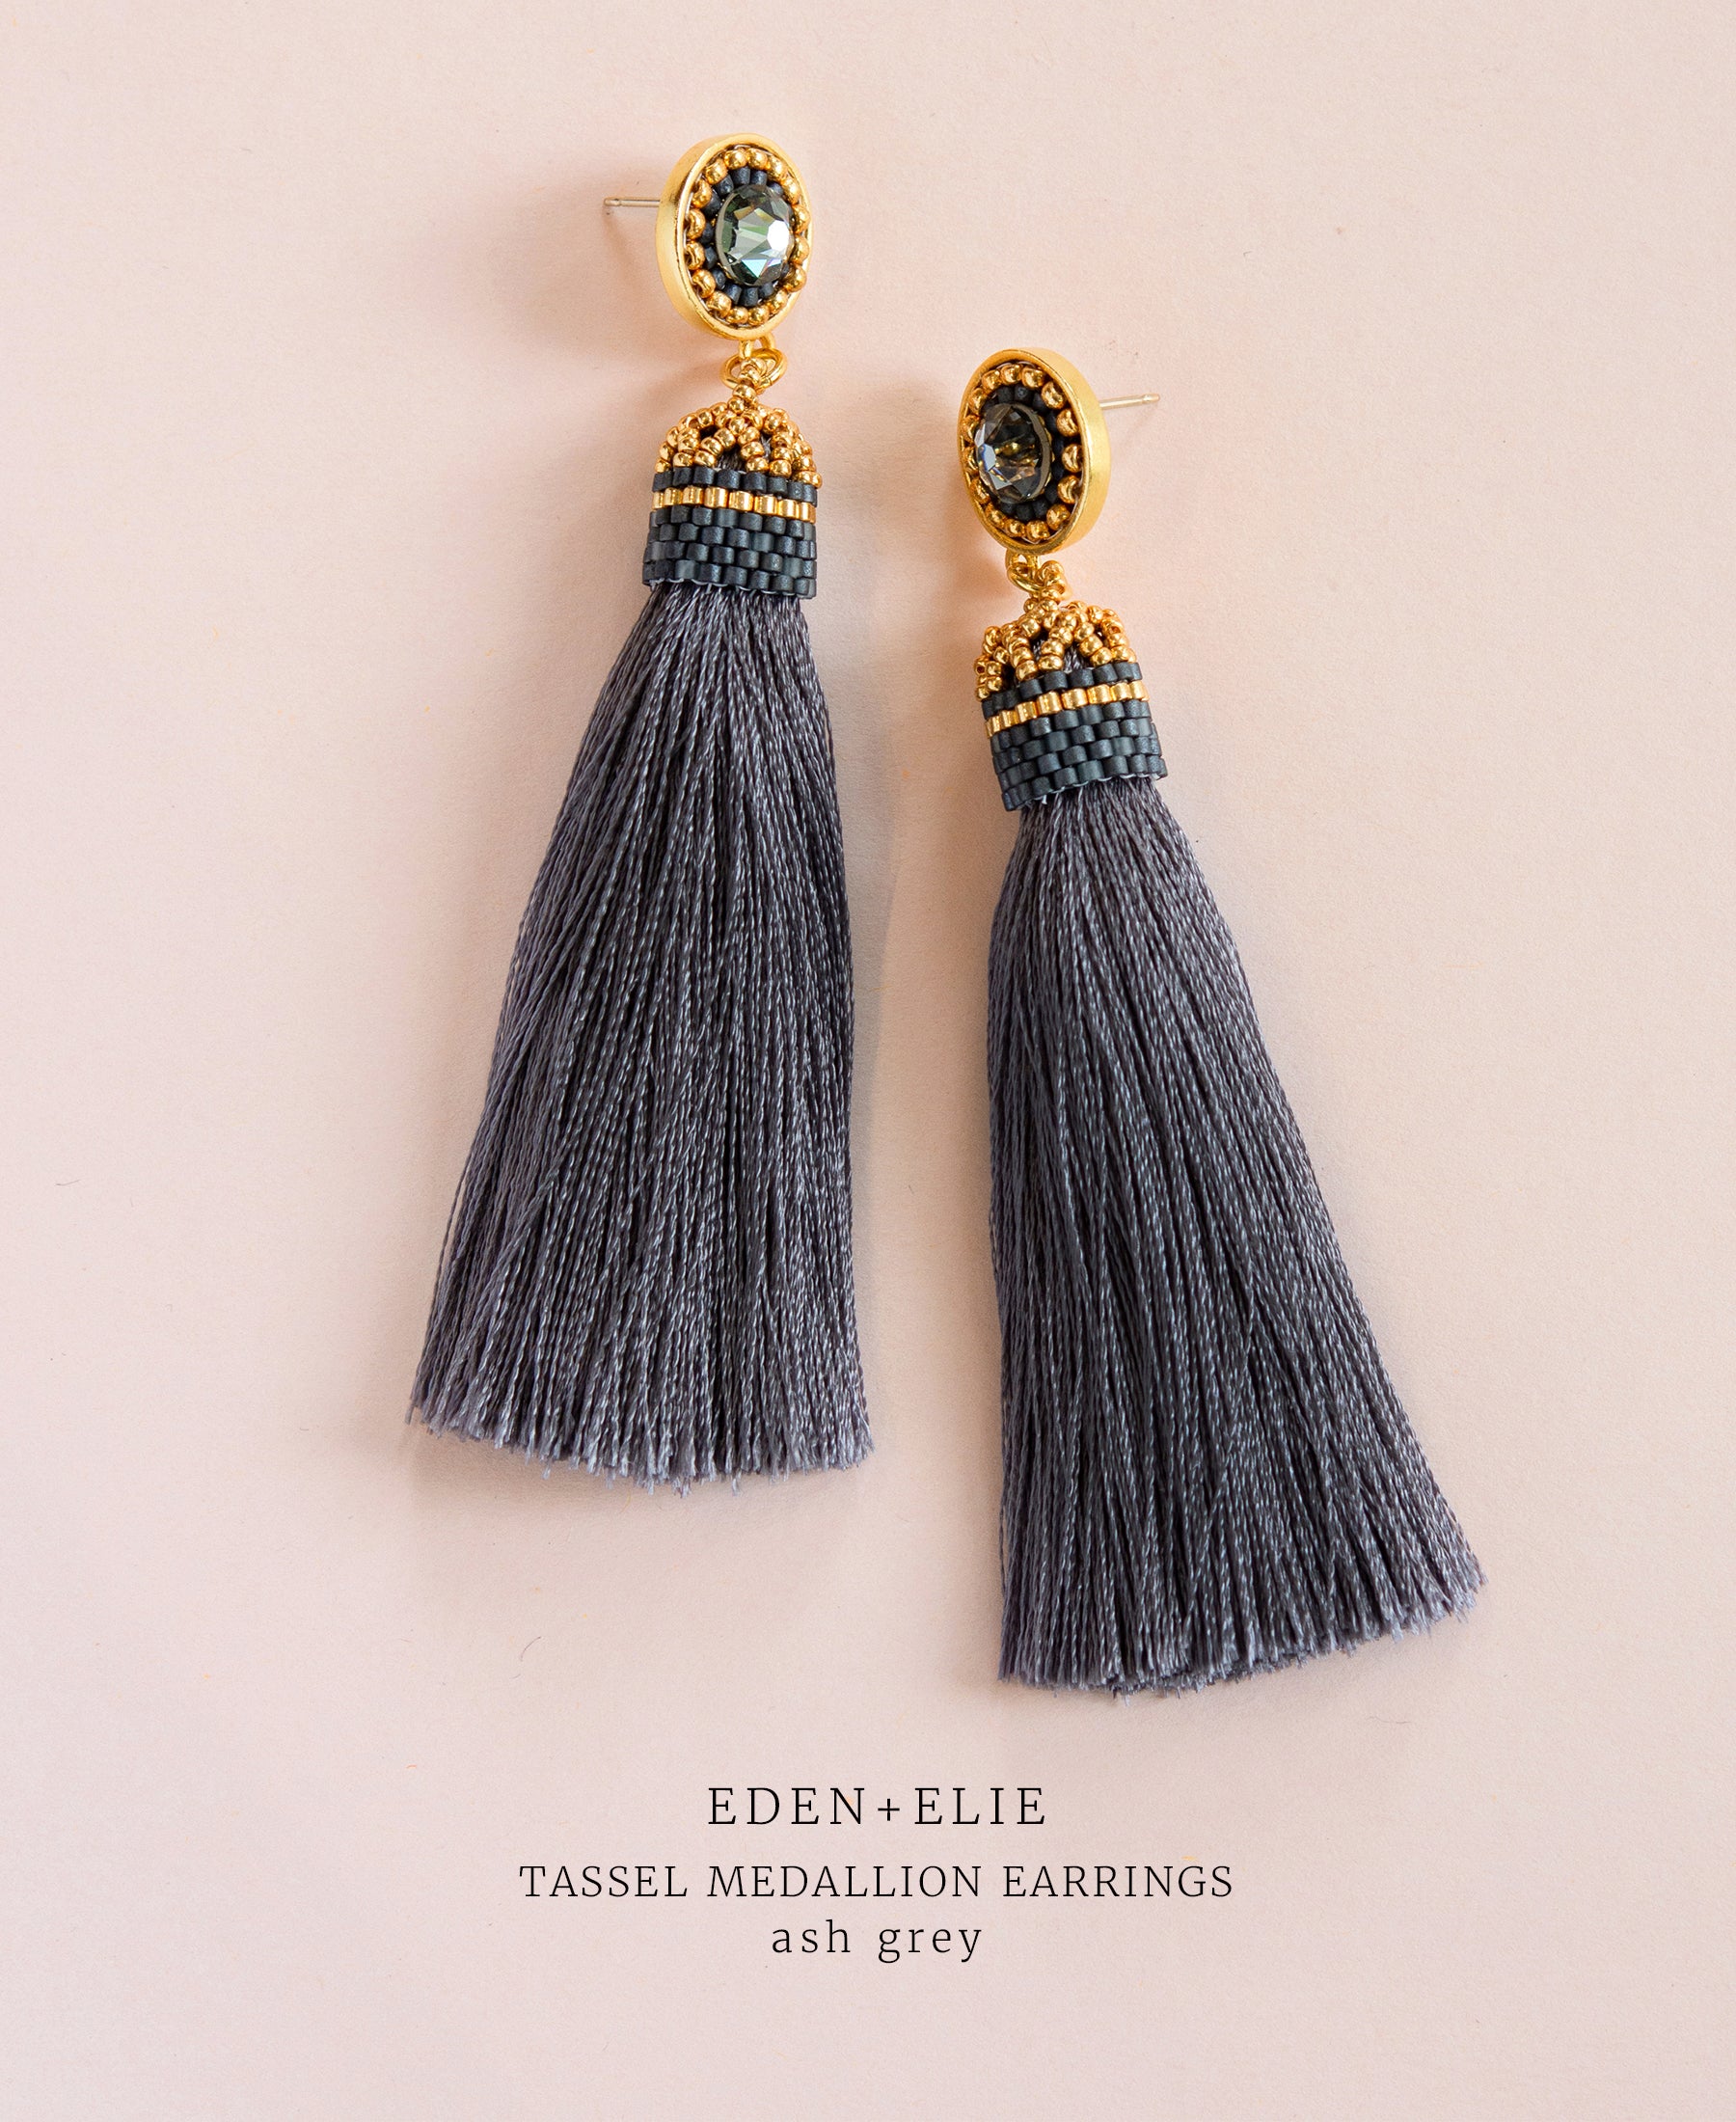 EDEN + ELIE silk tassel statement earrings - ash grey